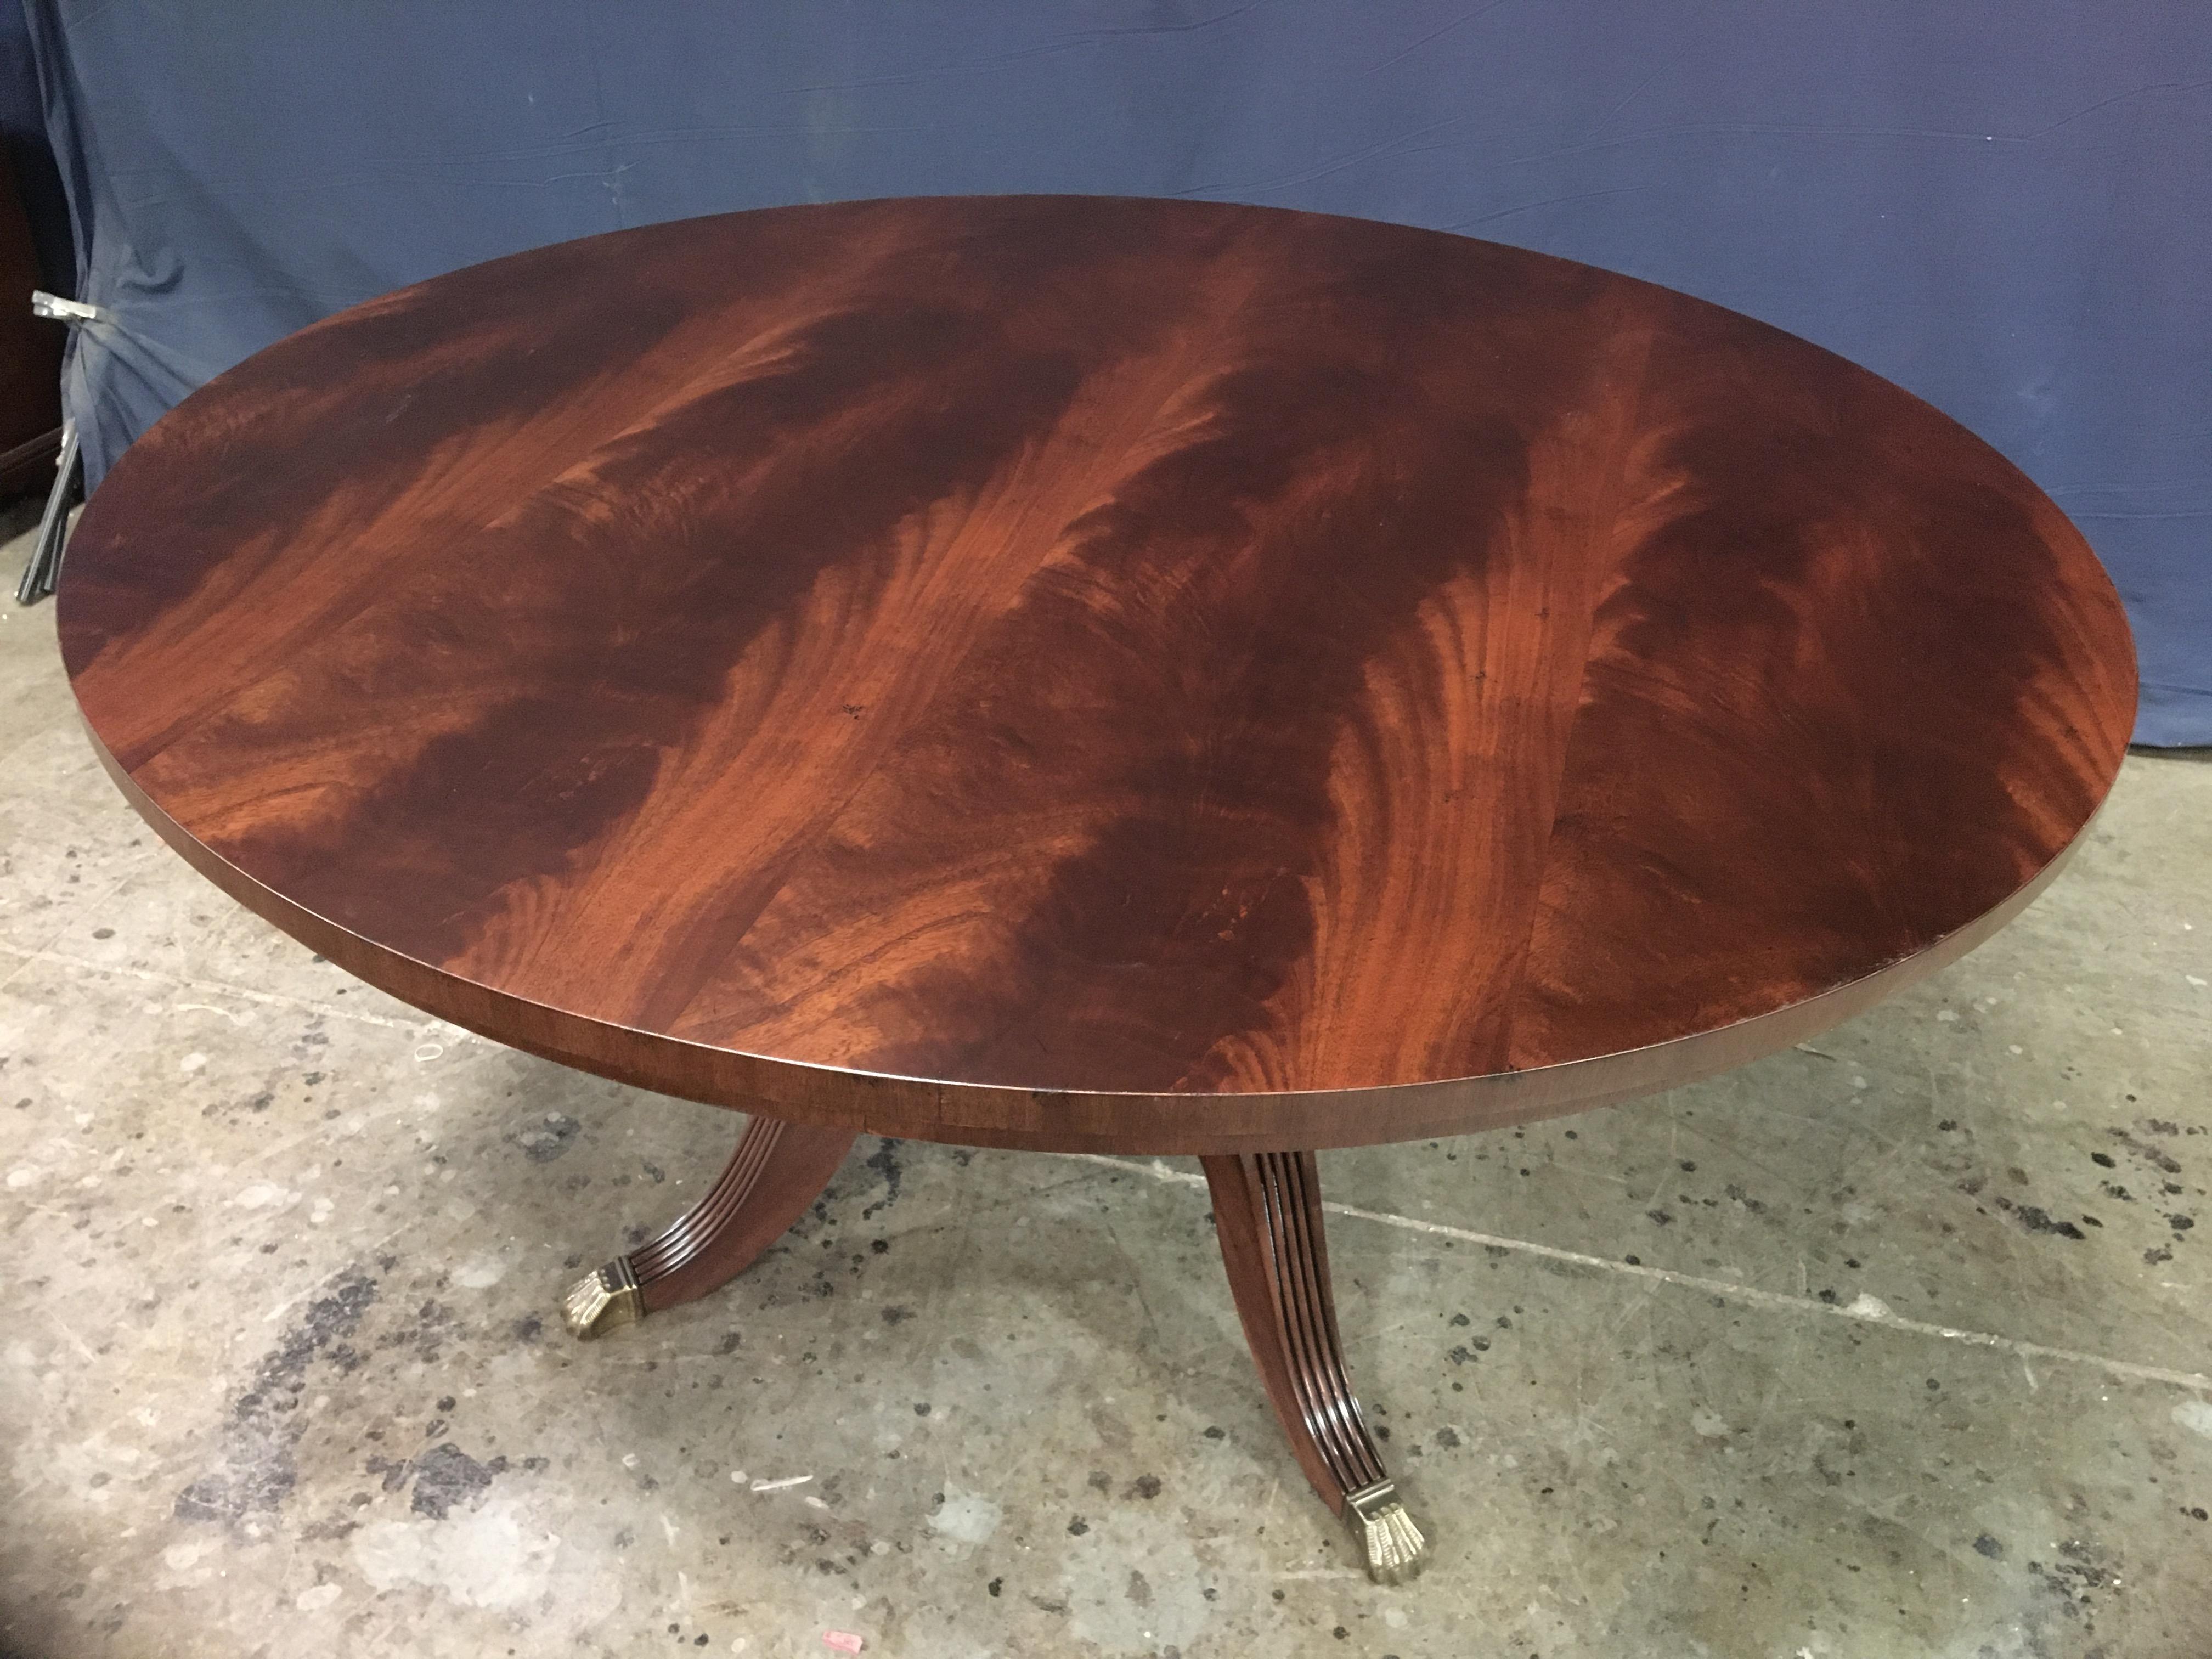 Cette table à manger ronde traditionnelle en acajou est fabriquée sur commande dans l'atelier de Leighton Hall. Il présente un champ d'acajou d'Afrique de l'Ouest tourbillonnant et assorti. Le plateau a une finition satinée avec une légère